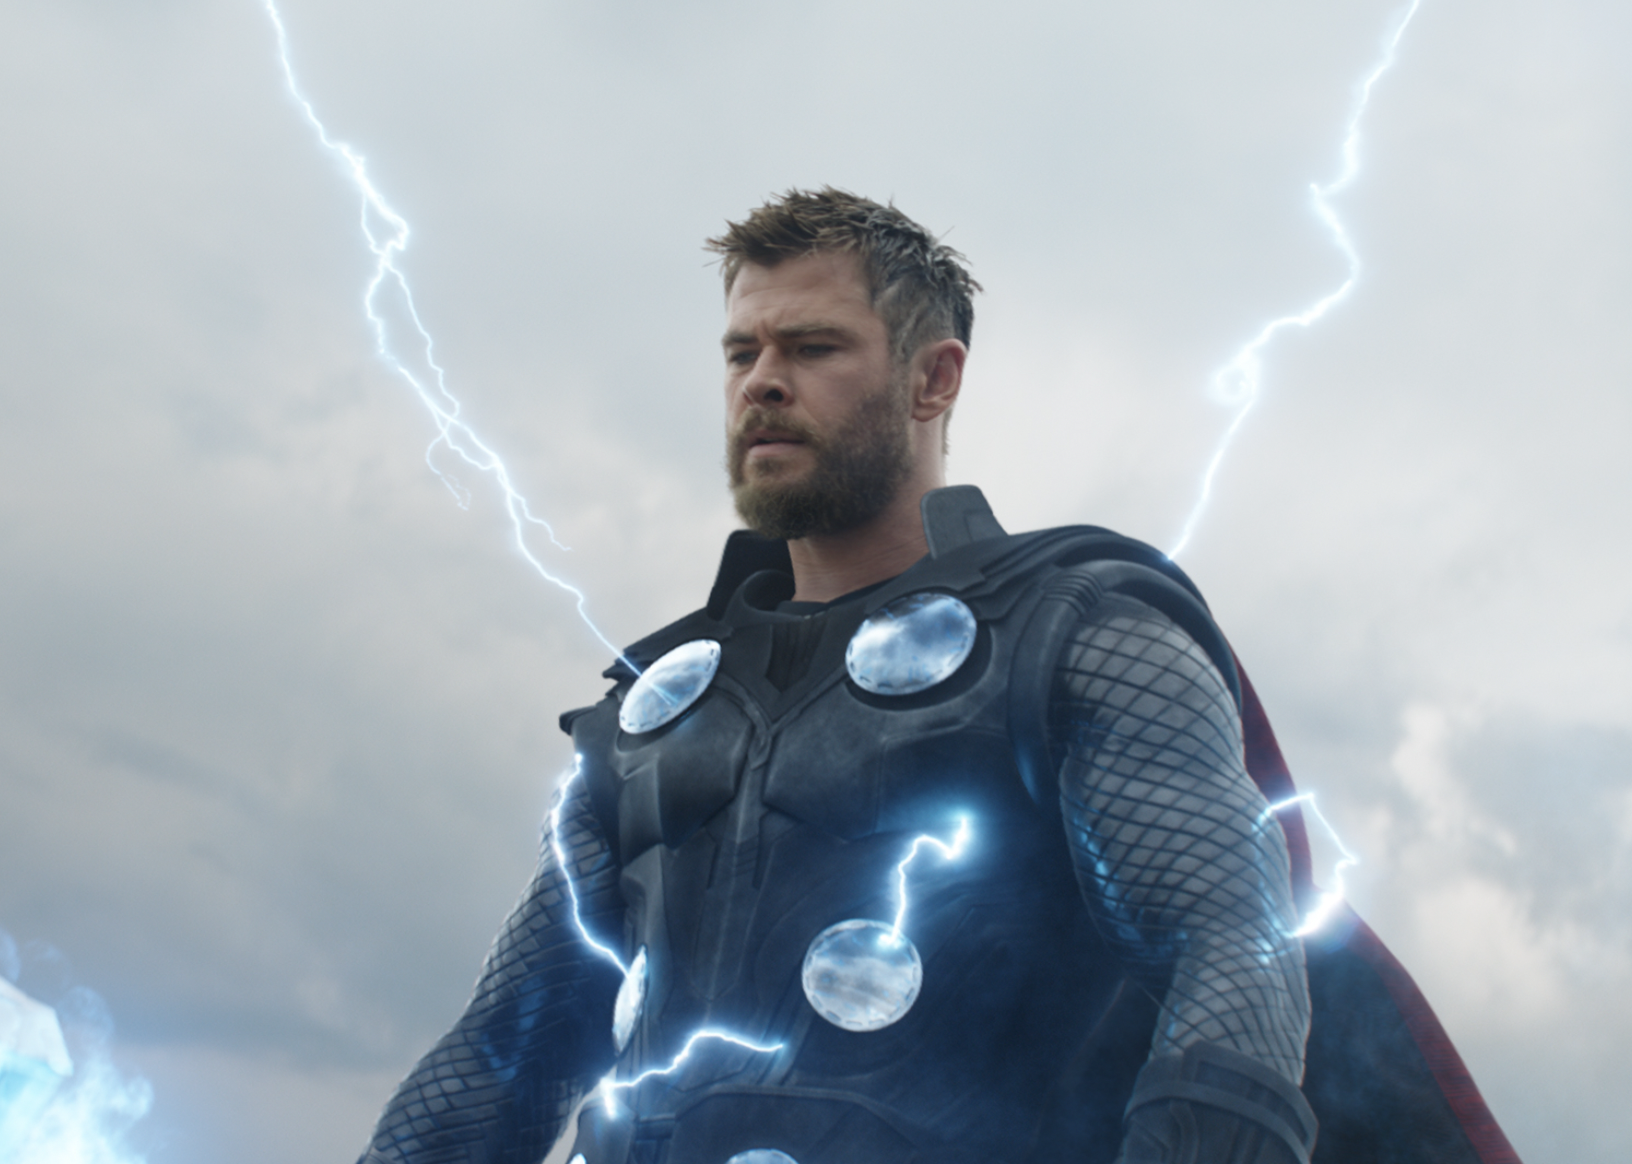 Chris Hemsworth in "Avengers: Endgame"